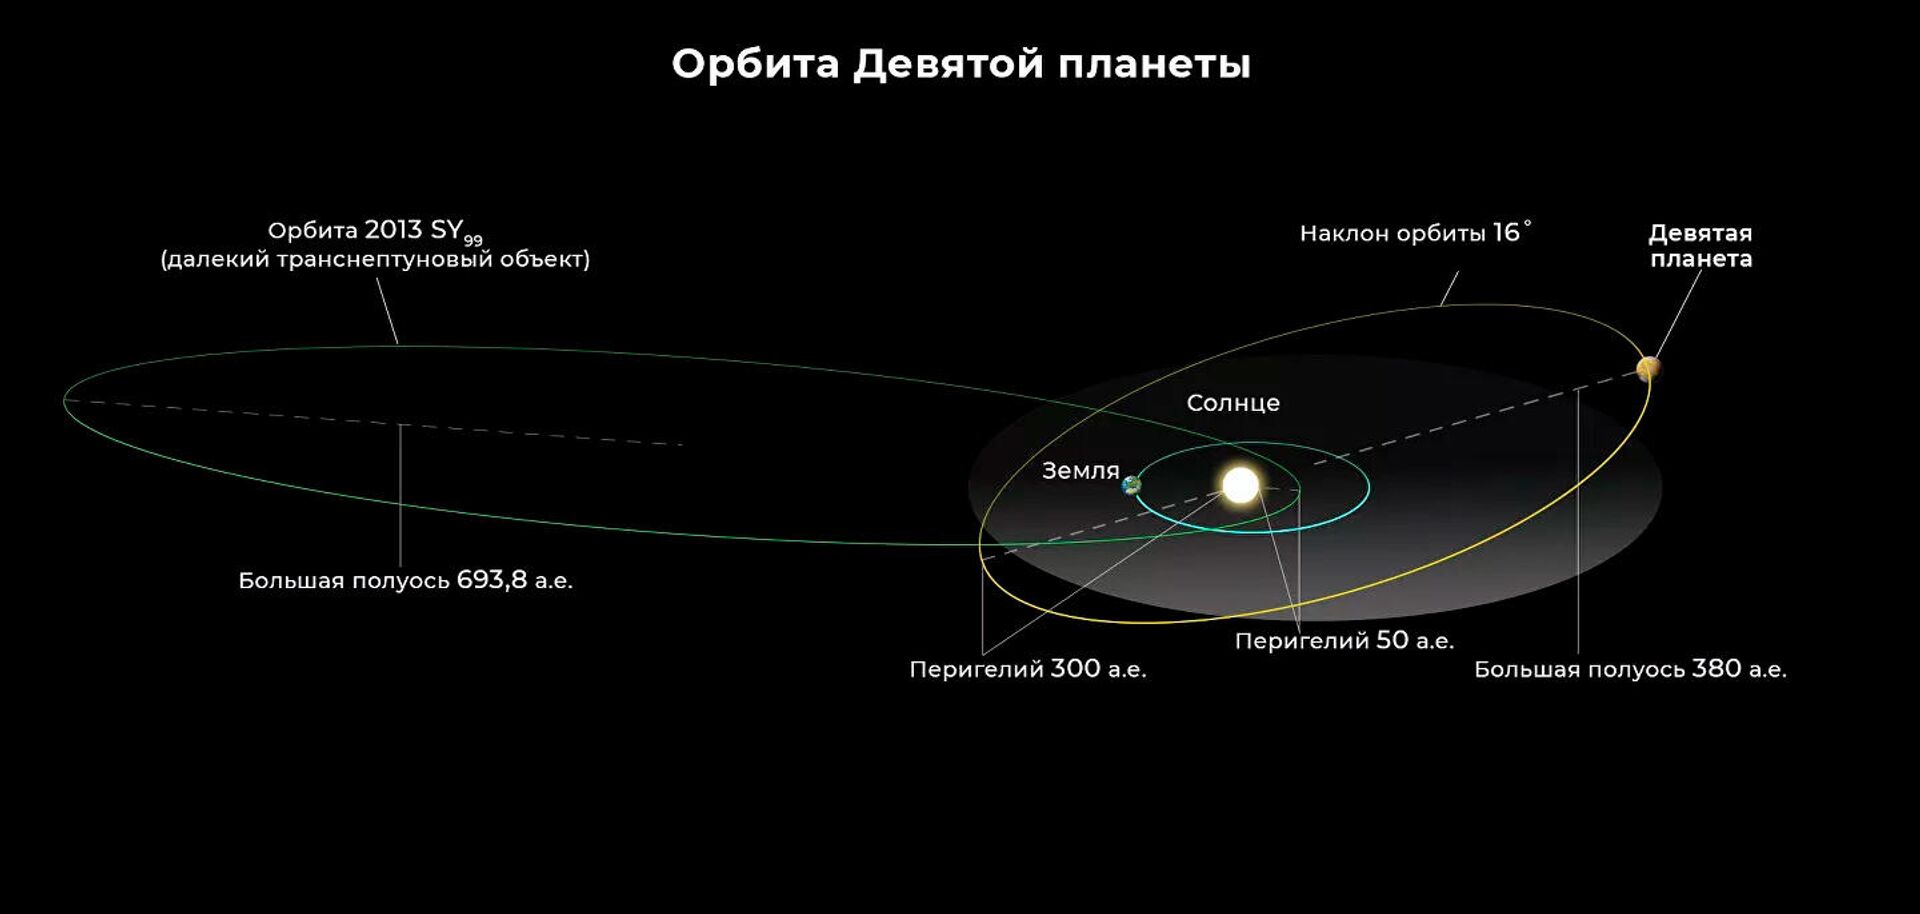 Орбиты Девятой планеты, Земли (не в масштабе) и одного из 11 аномальных транснептуновых объектов, включенных в анализ М. Брауна и К. Батыгина - Sputnik Latvija, 1920, 19.09.2021